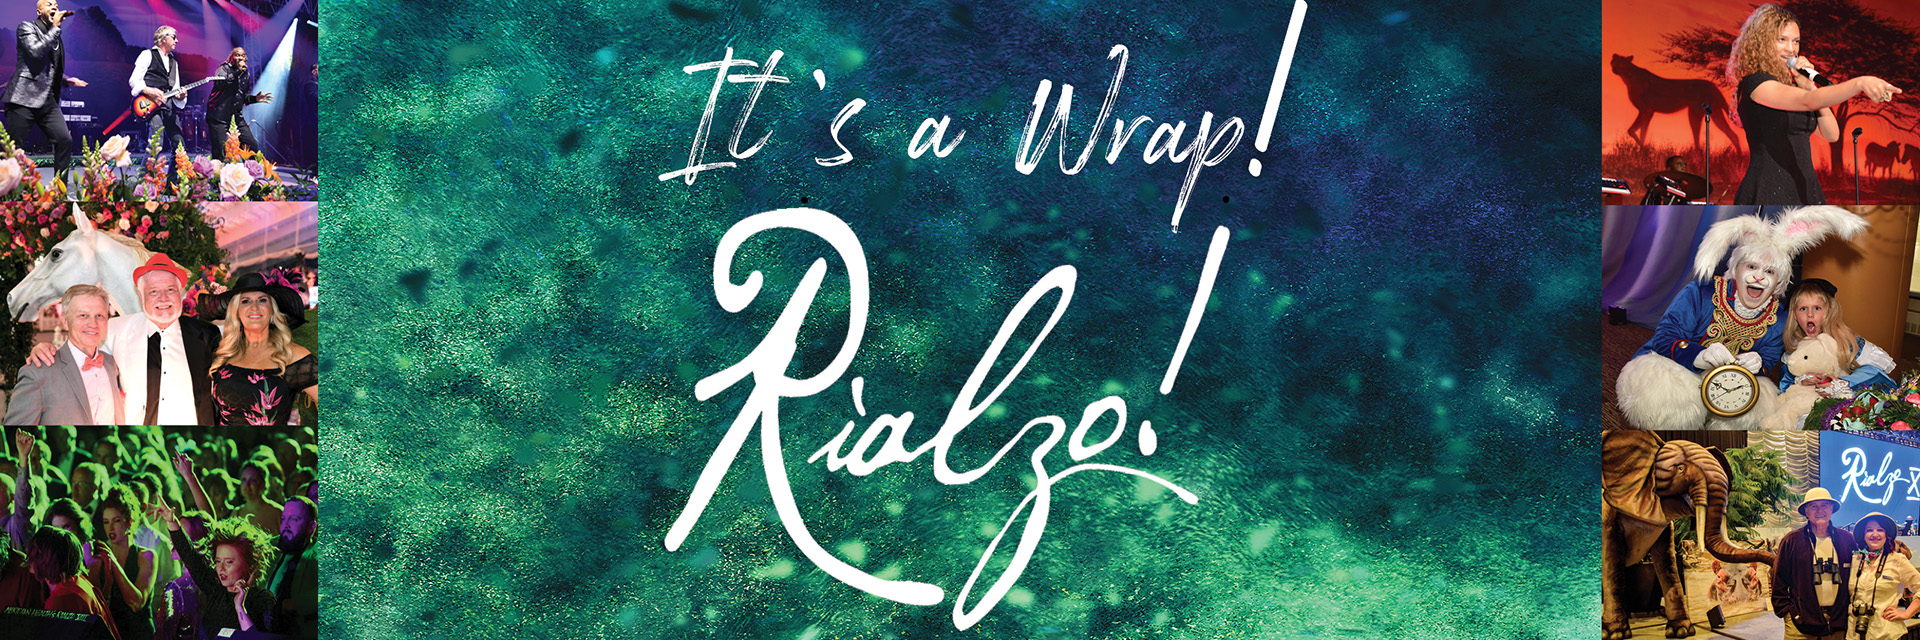 It's a Wrap! Rialzo!